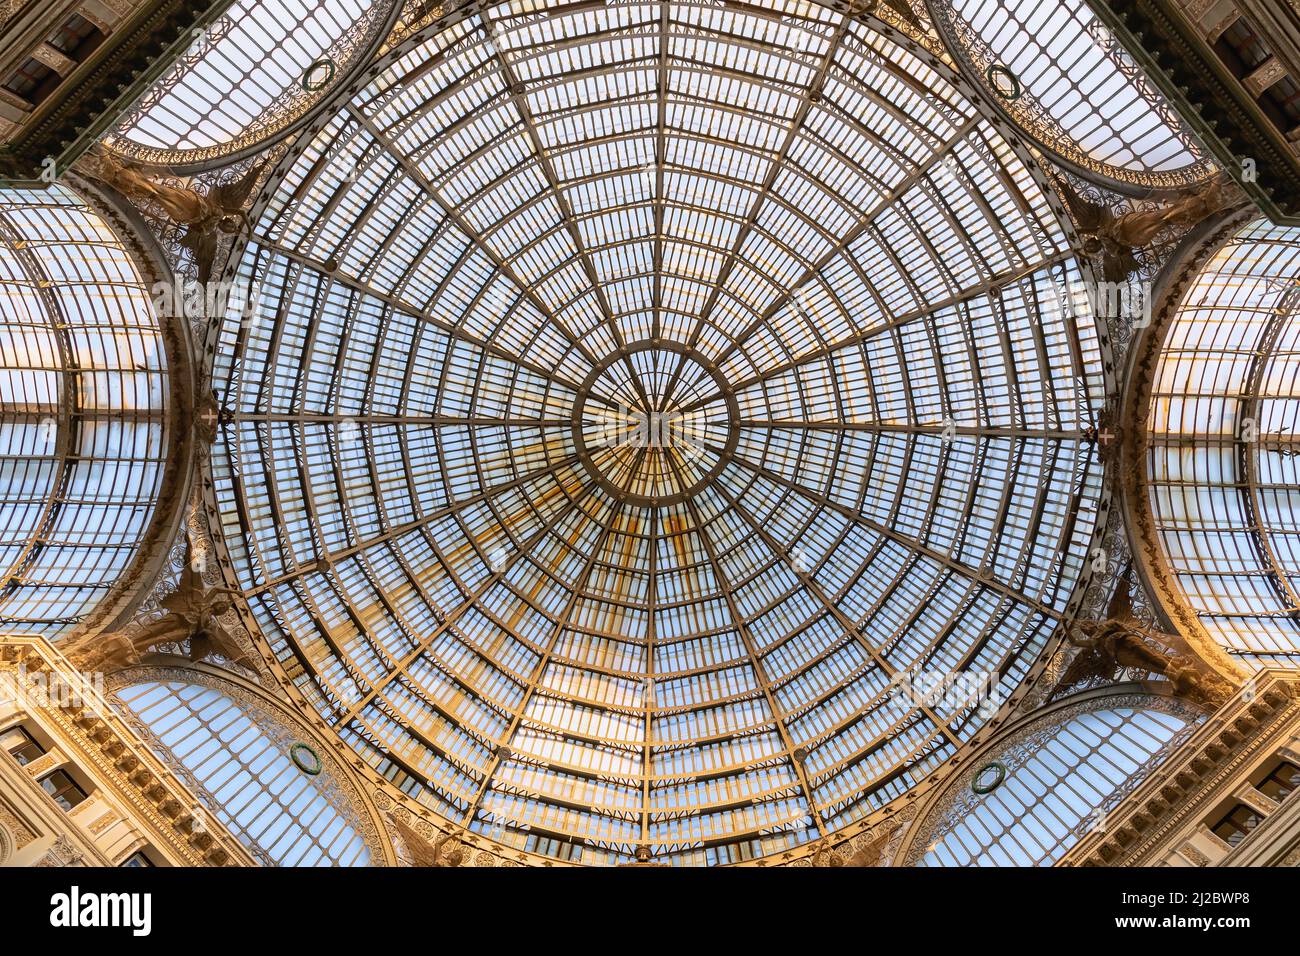 Naples, Italie - 24 mars 2022 : le dôme de la Galleria Umberto que j'ai vu de l'intérieur. La galerie commerciale a été construite à Naples entre 1887 et 1 Banque D'Images